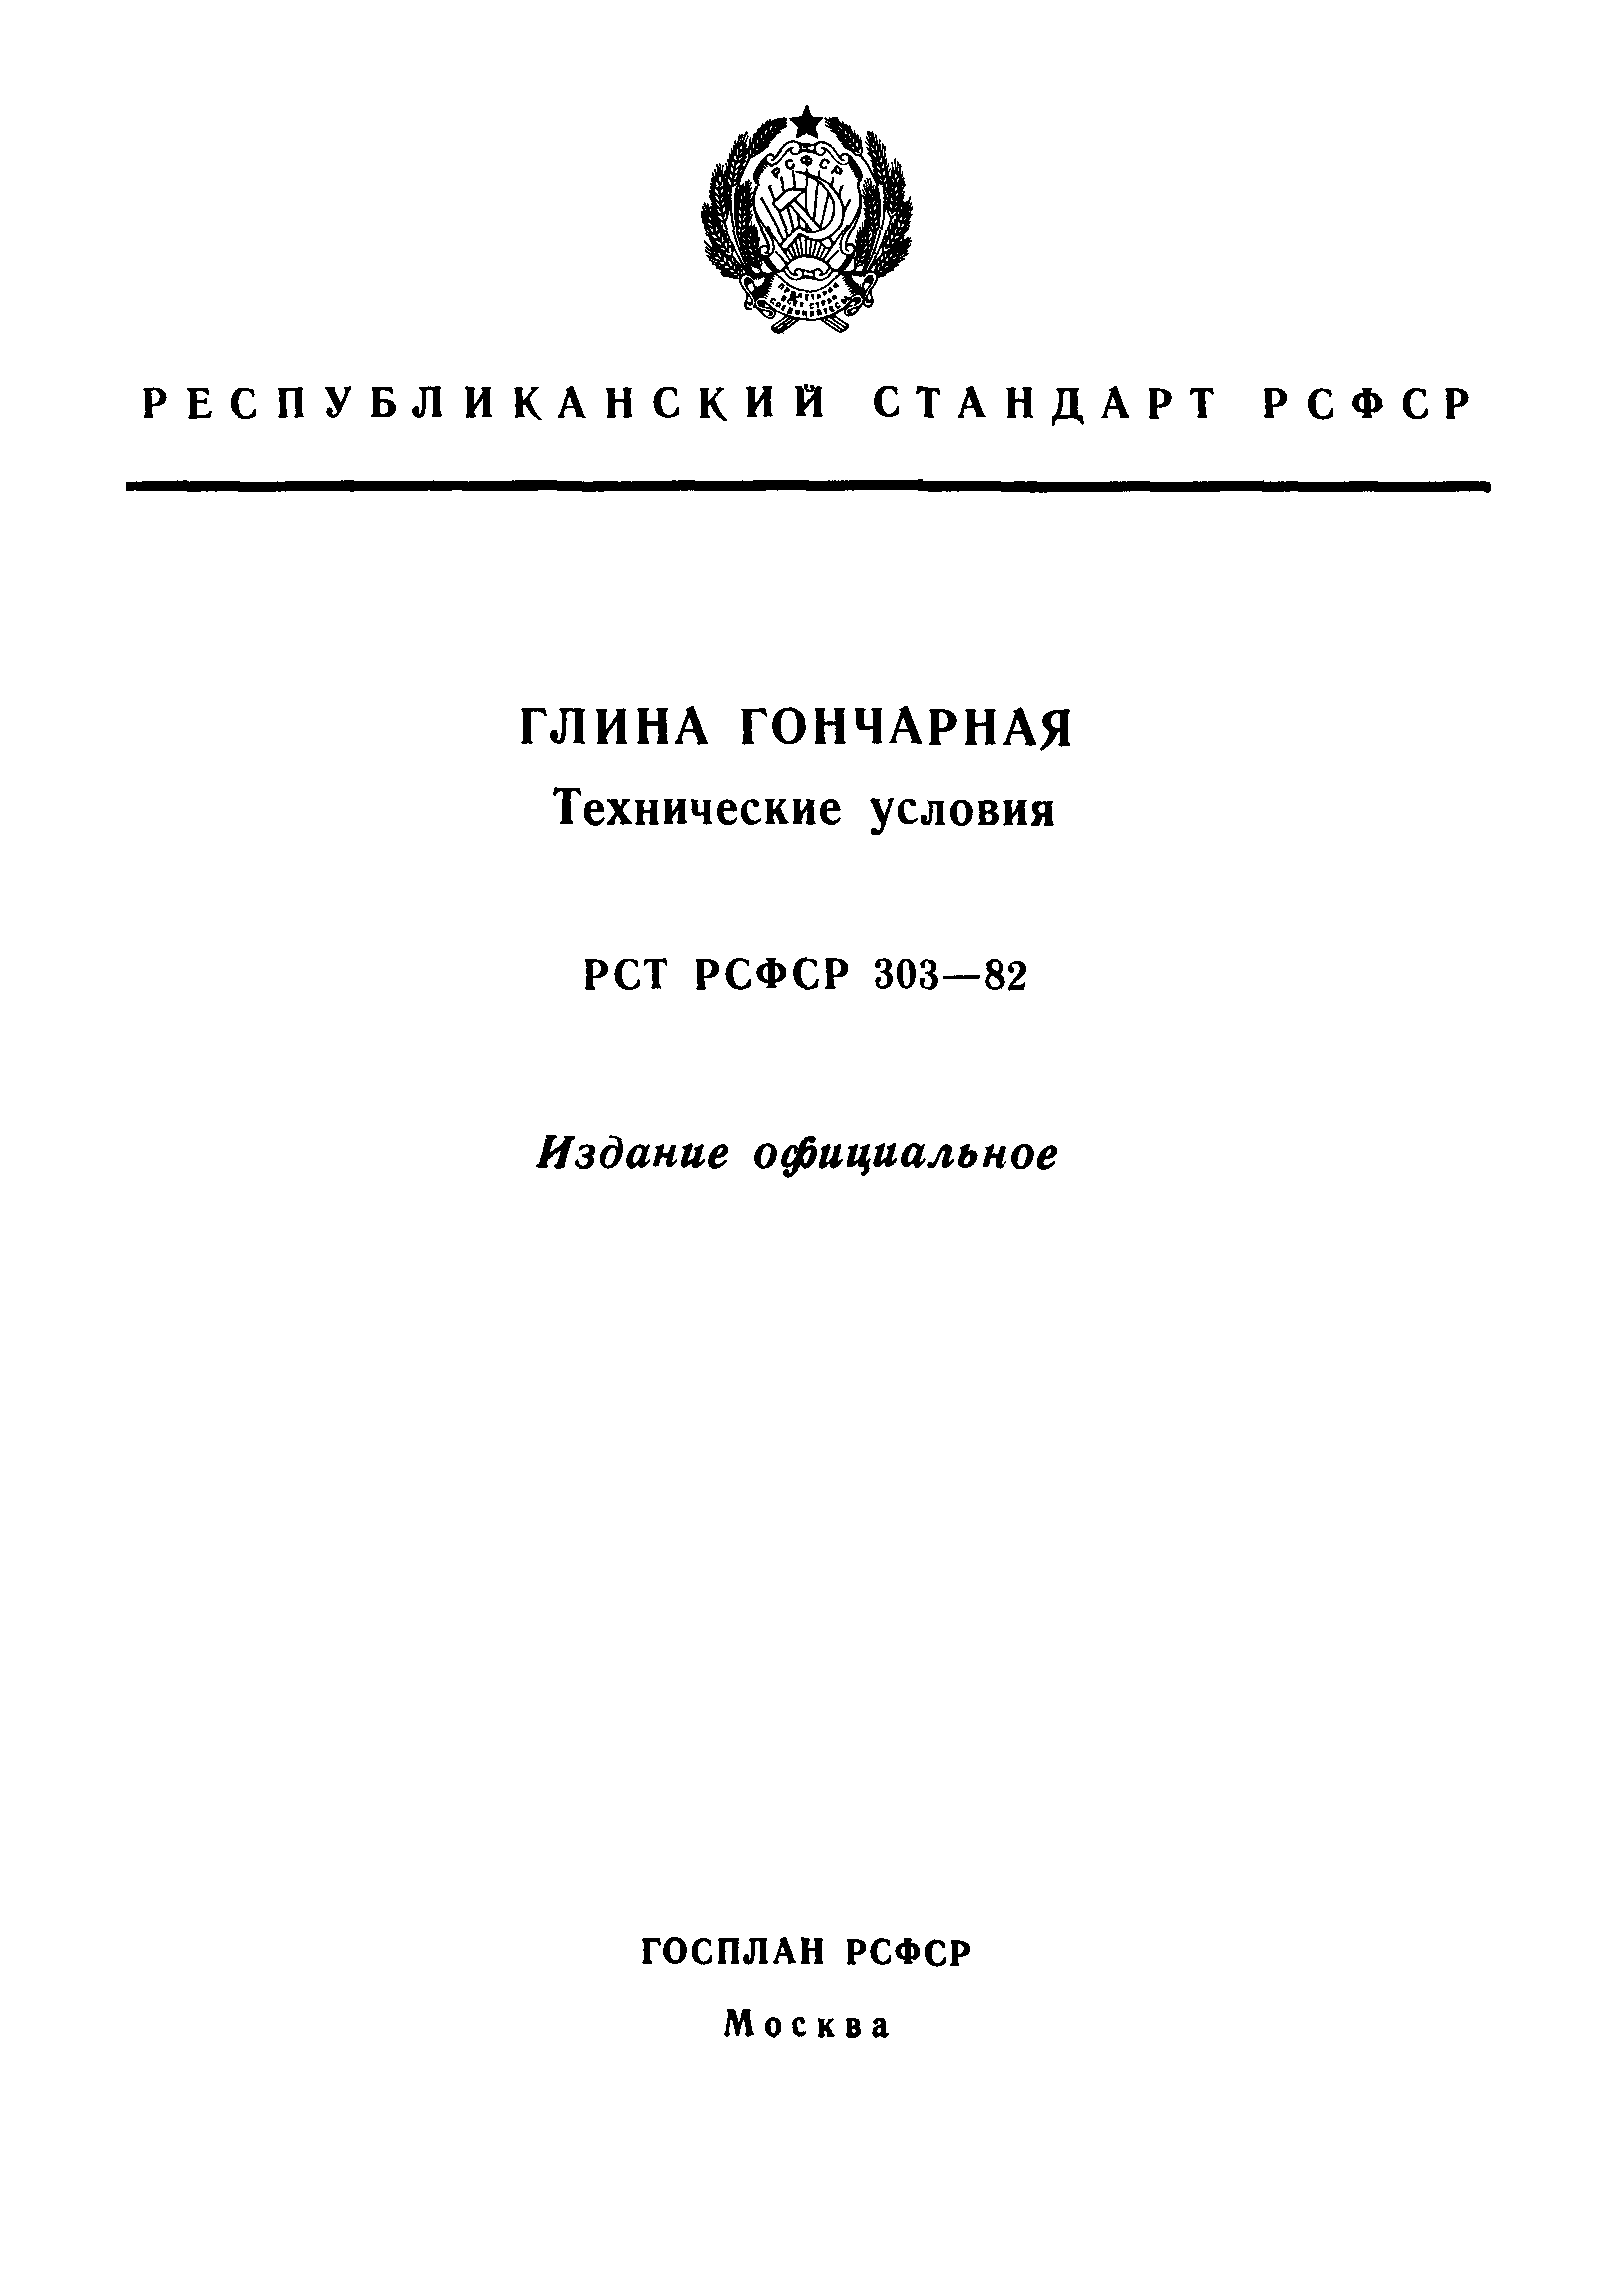 РСТ РСФСР 303-82